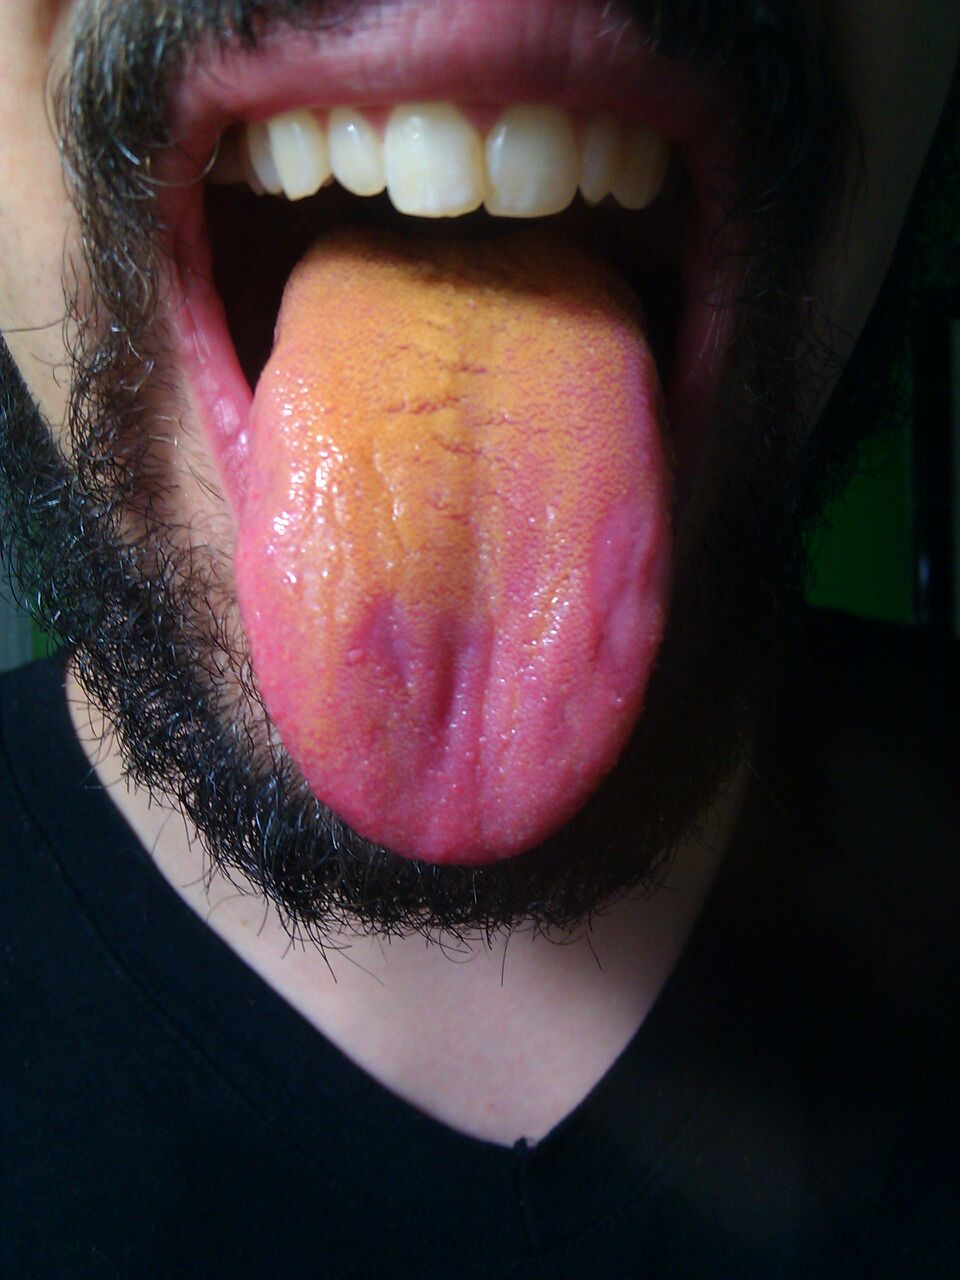 Acid reflux cause orange tongue